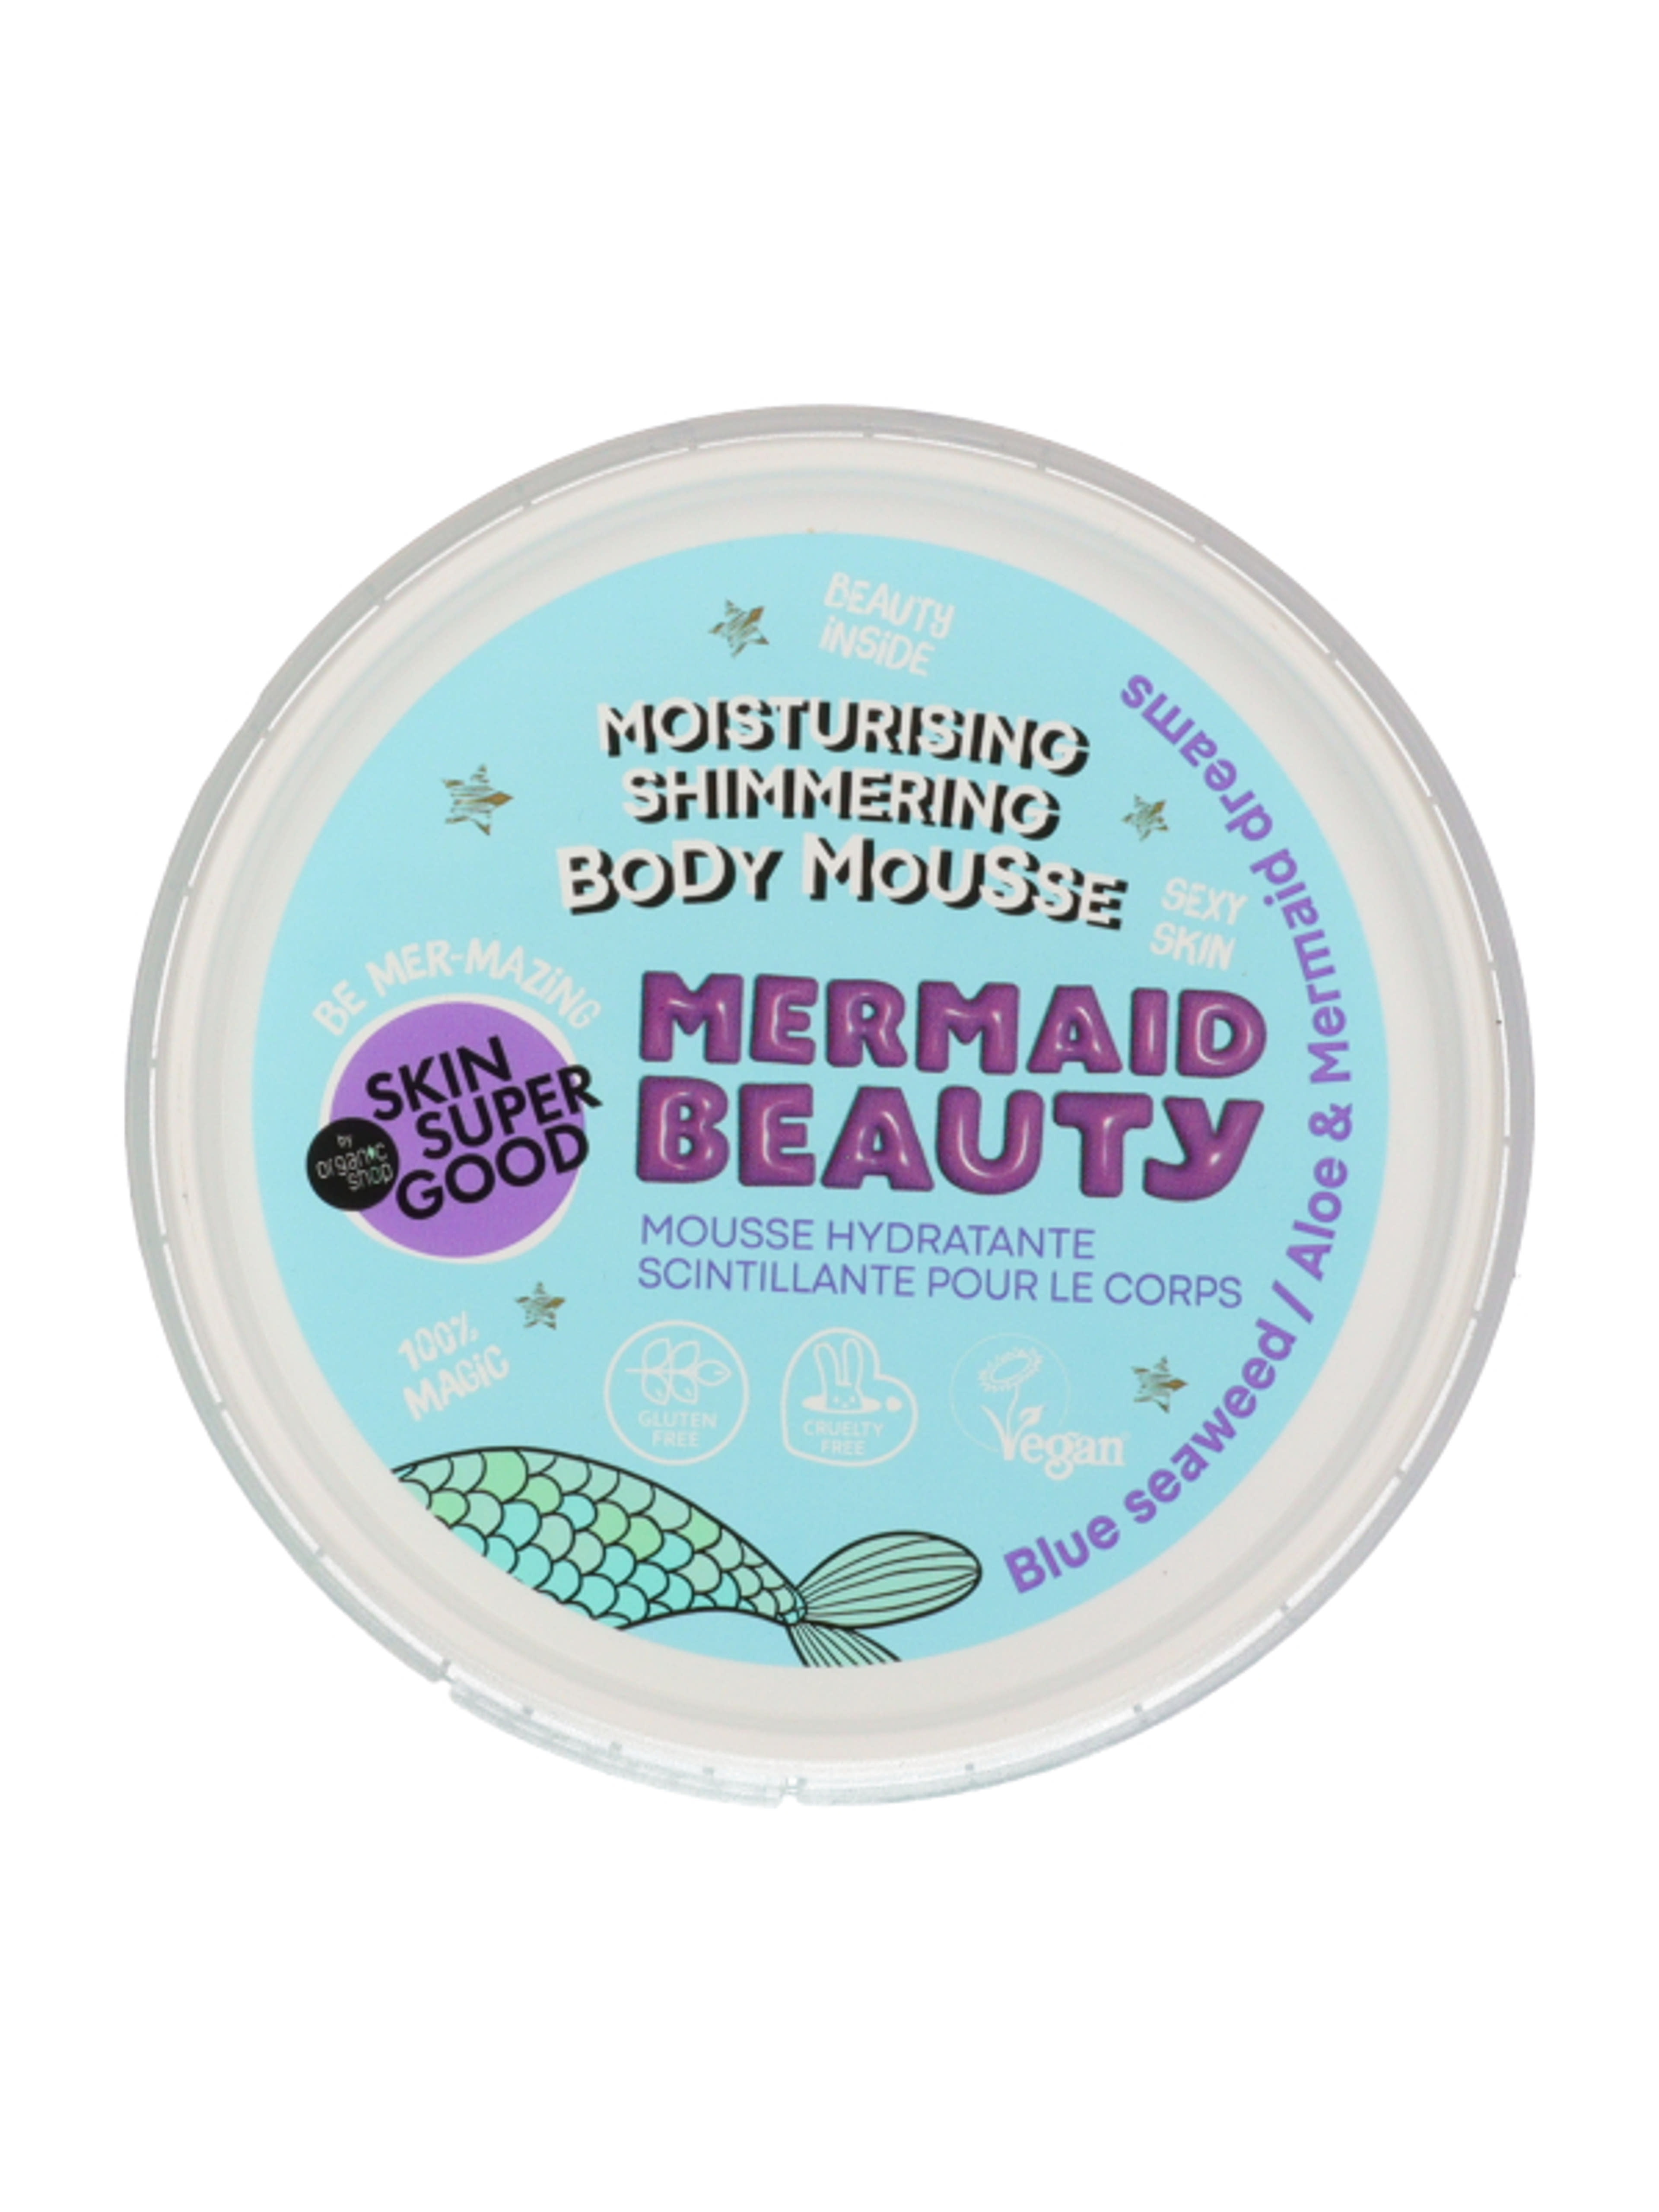 Skin Super Good hidratáló csillogó testápoló mousse /Mermaid Beauty  - 250 ml